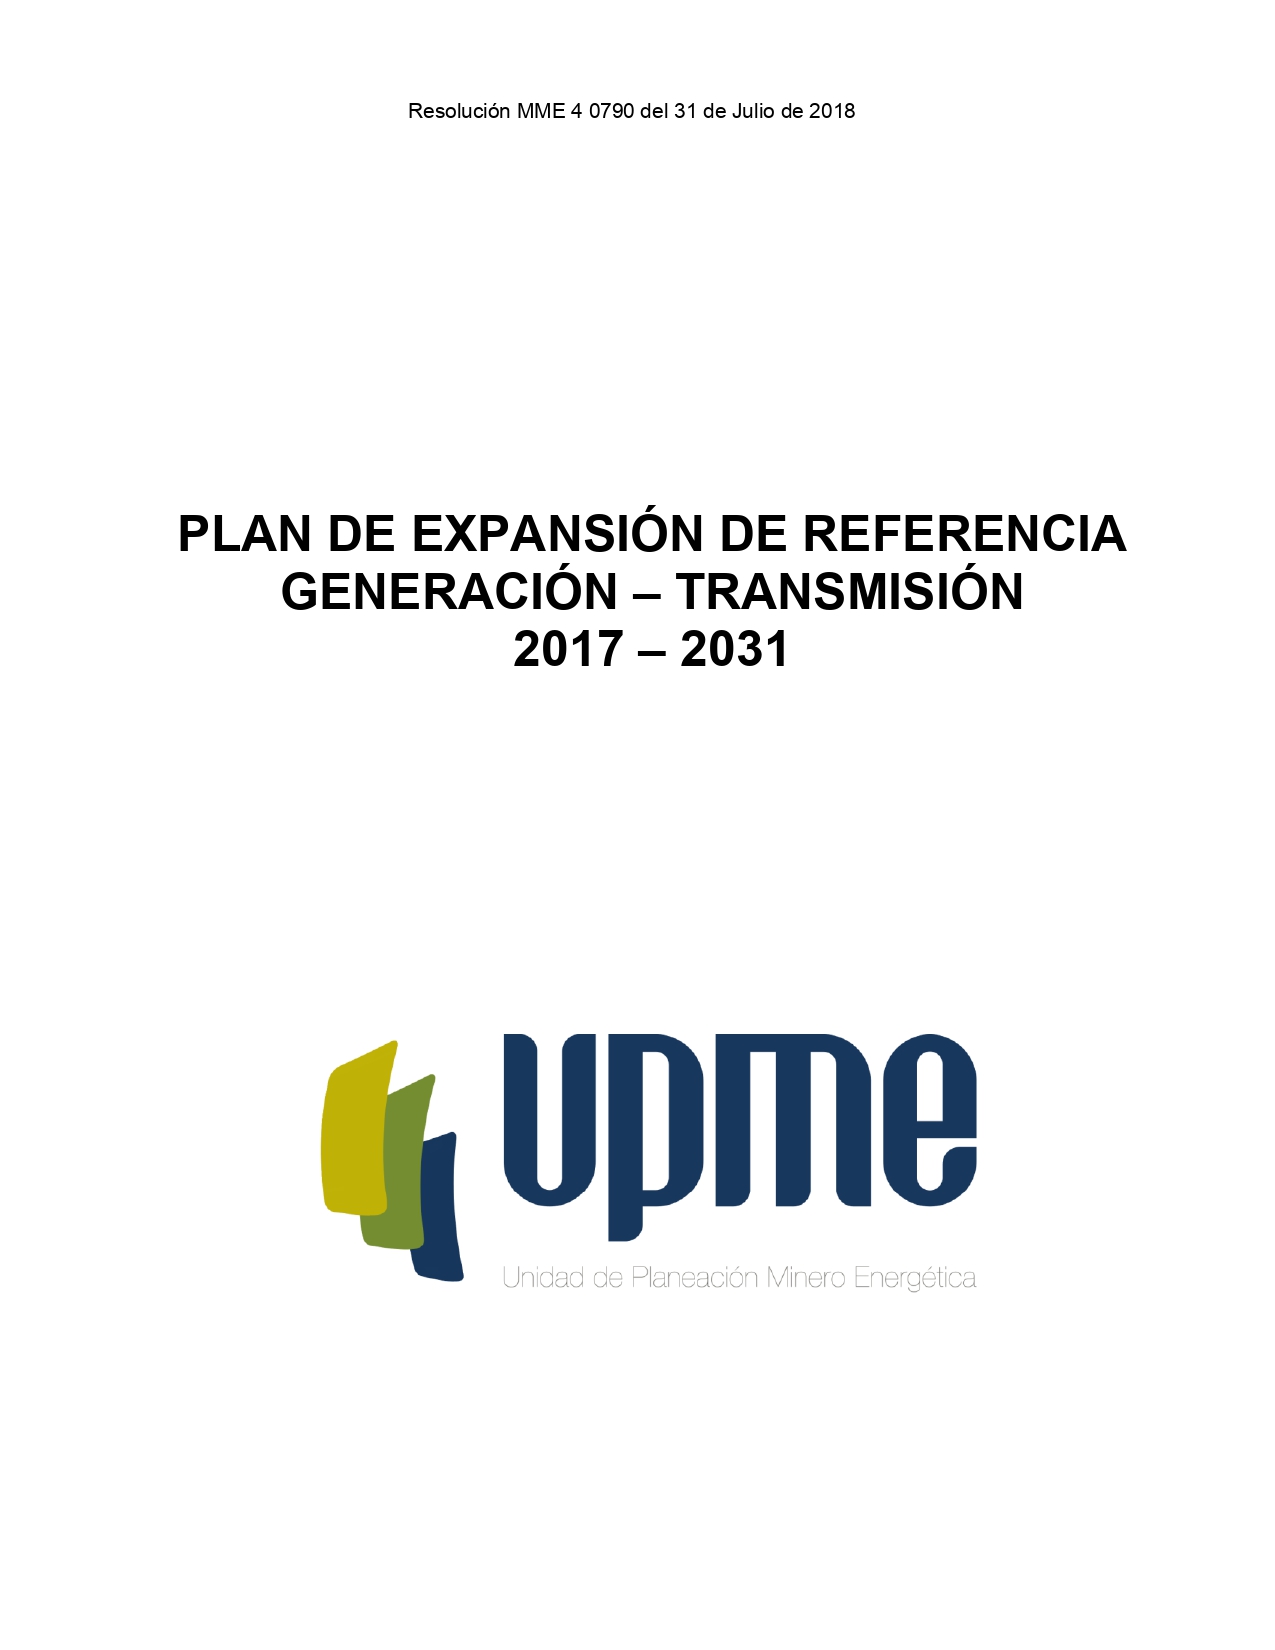 Plan de expansión de referencia generación - transmisión (2017-2031) -portada_pages-to-jpg-0001